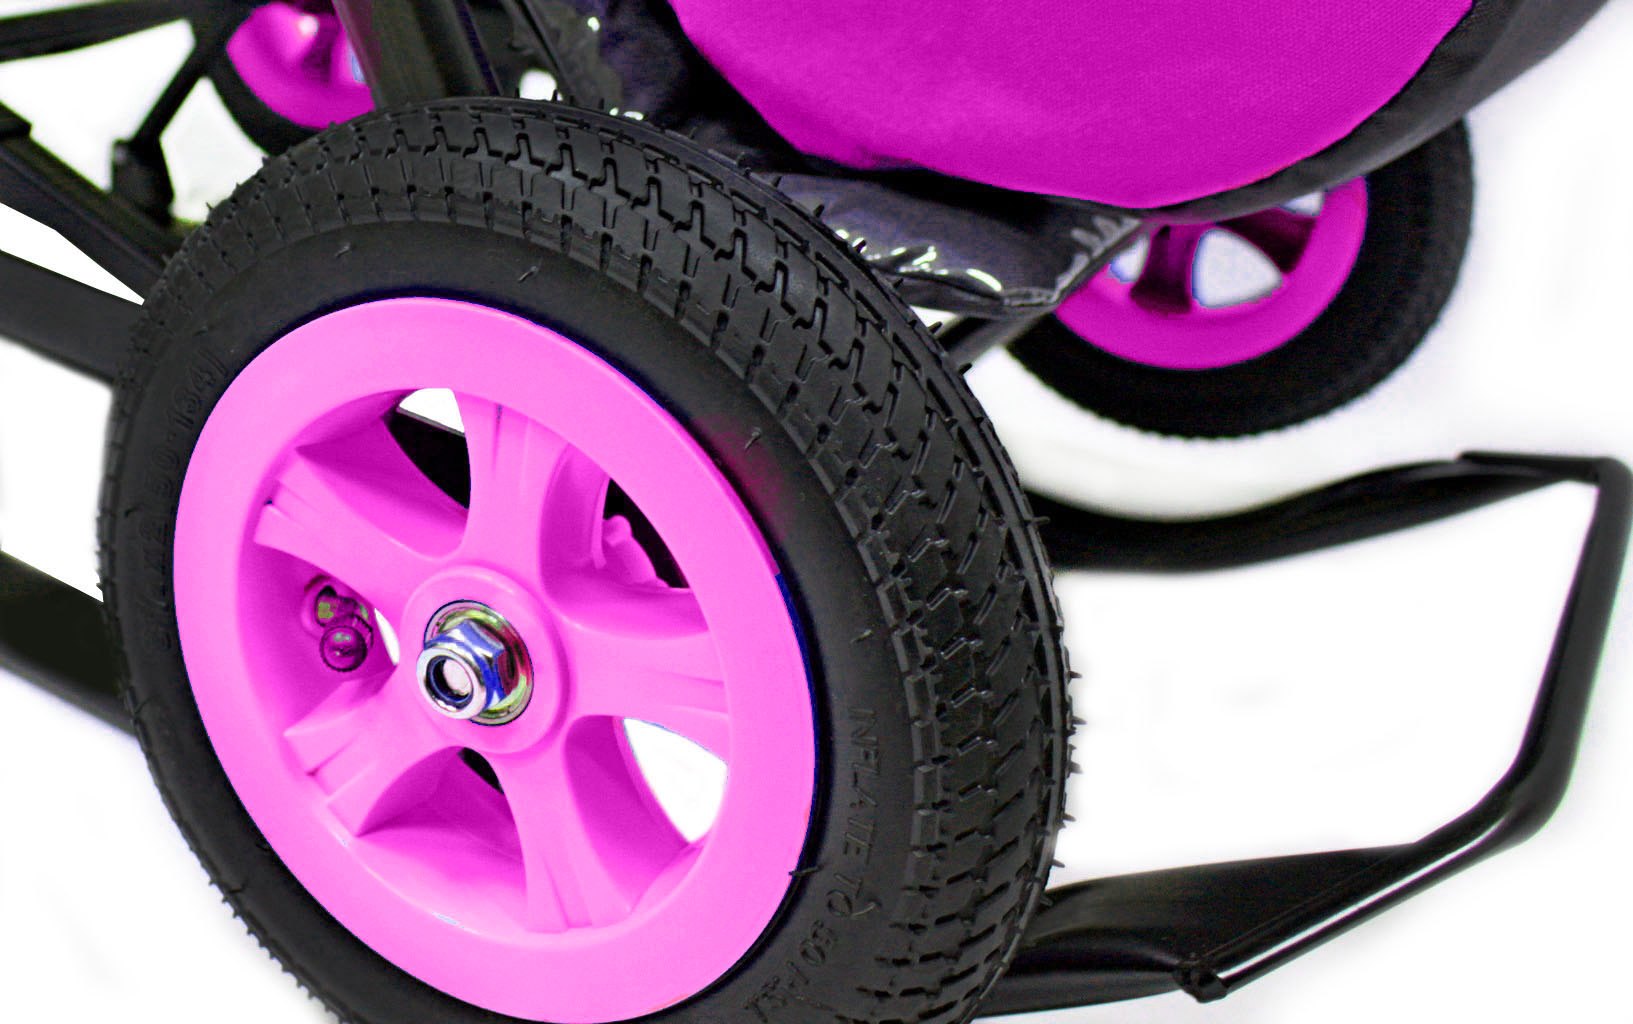 Санки-коляска Snow Galaxy - City-1-1 - Мишка в красной футболке в очках, цвет розовый на больших надувных колесах, сумка, варежки  